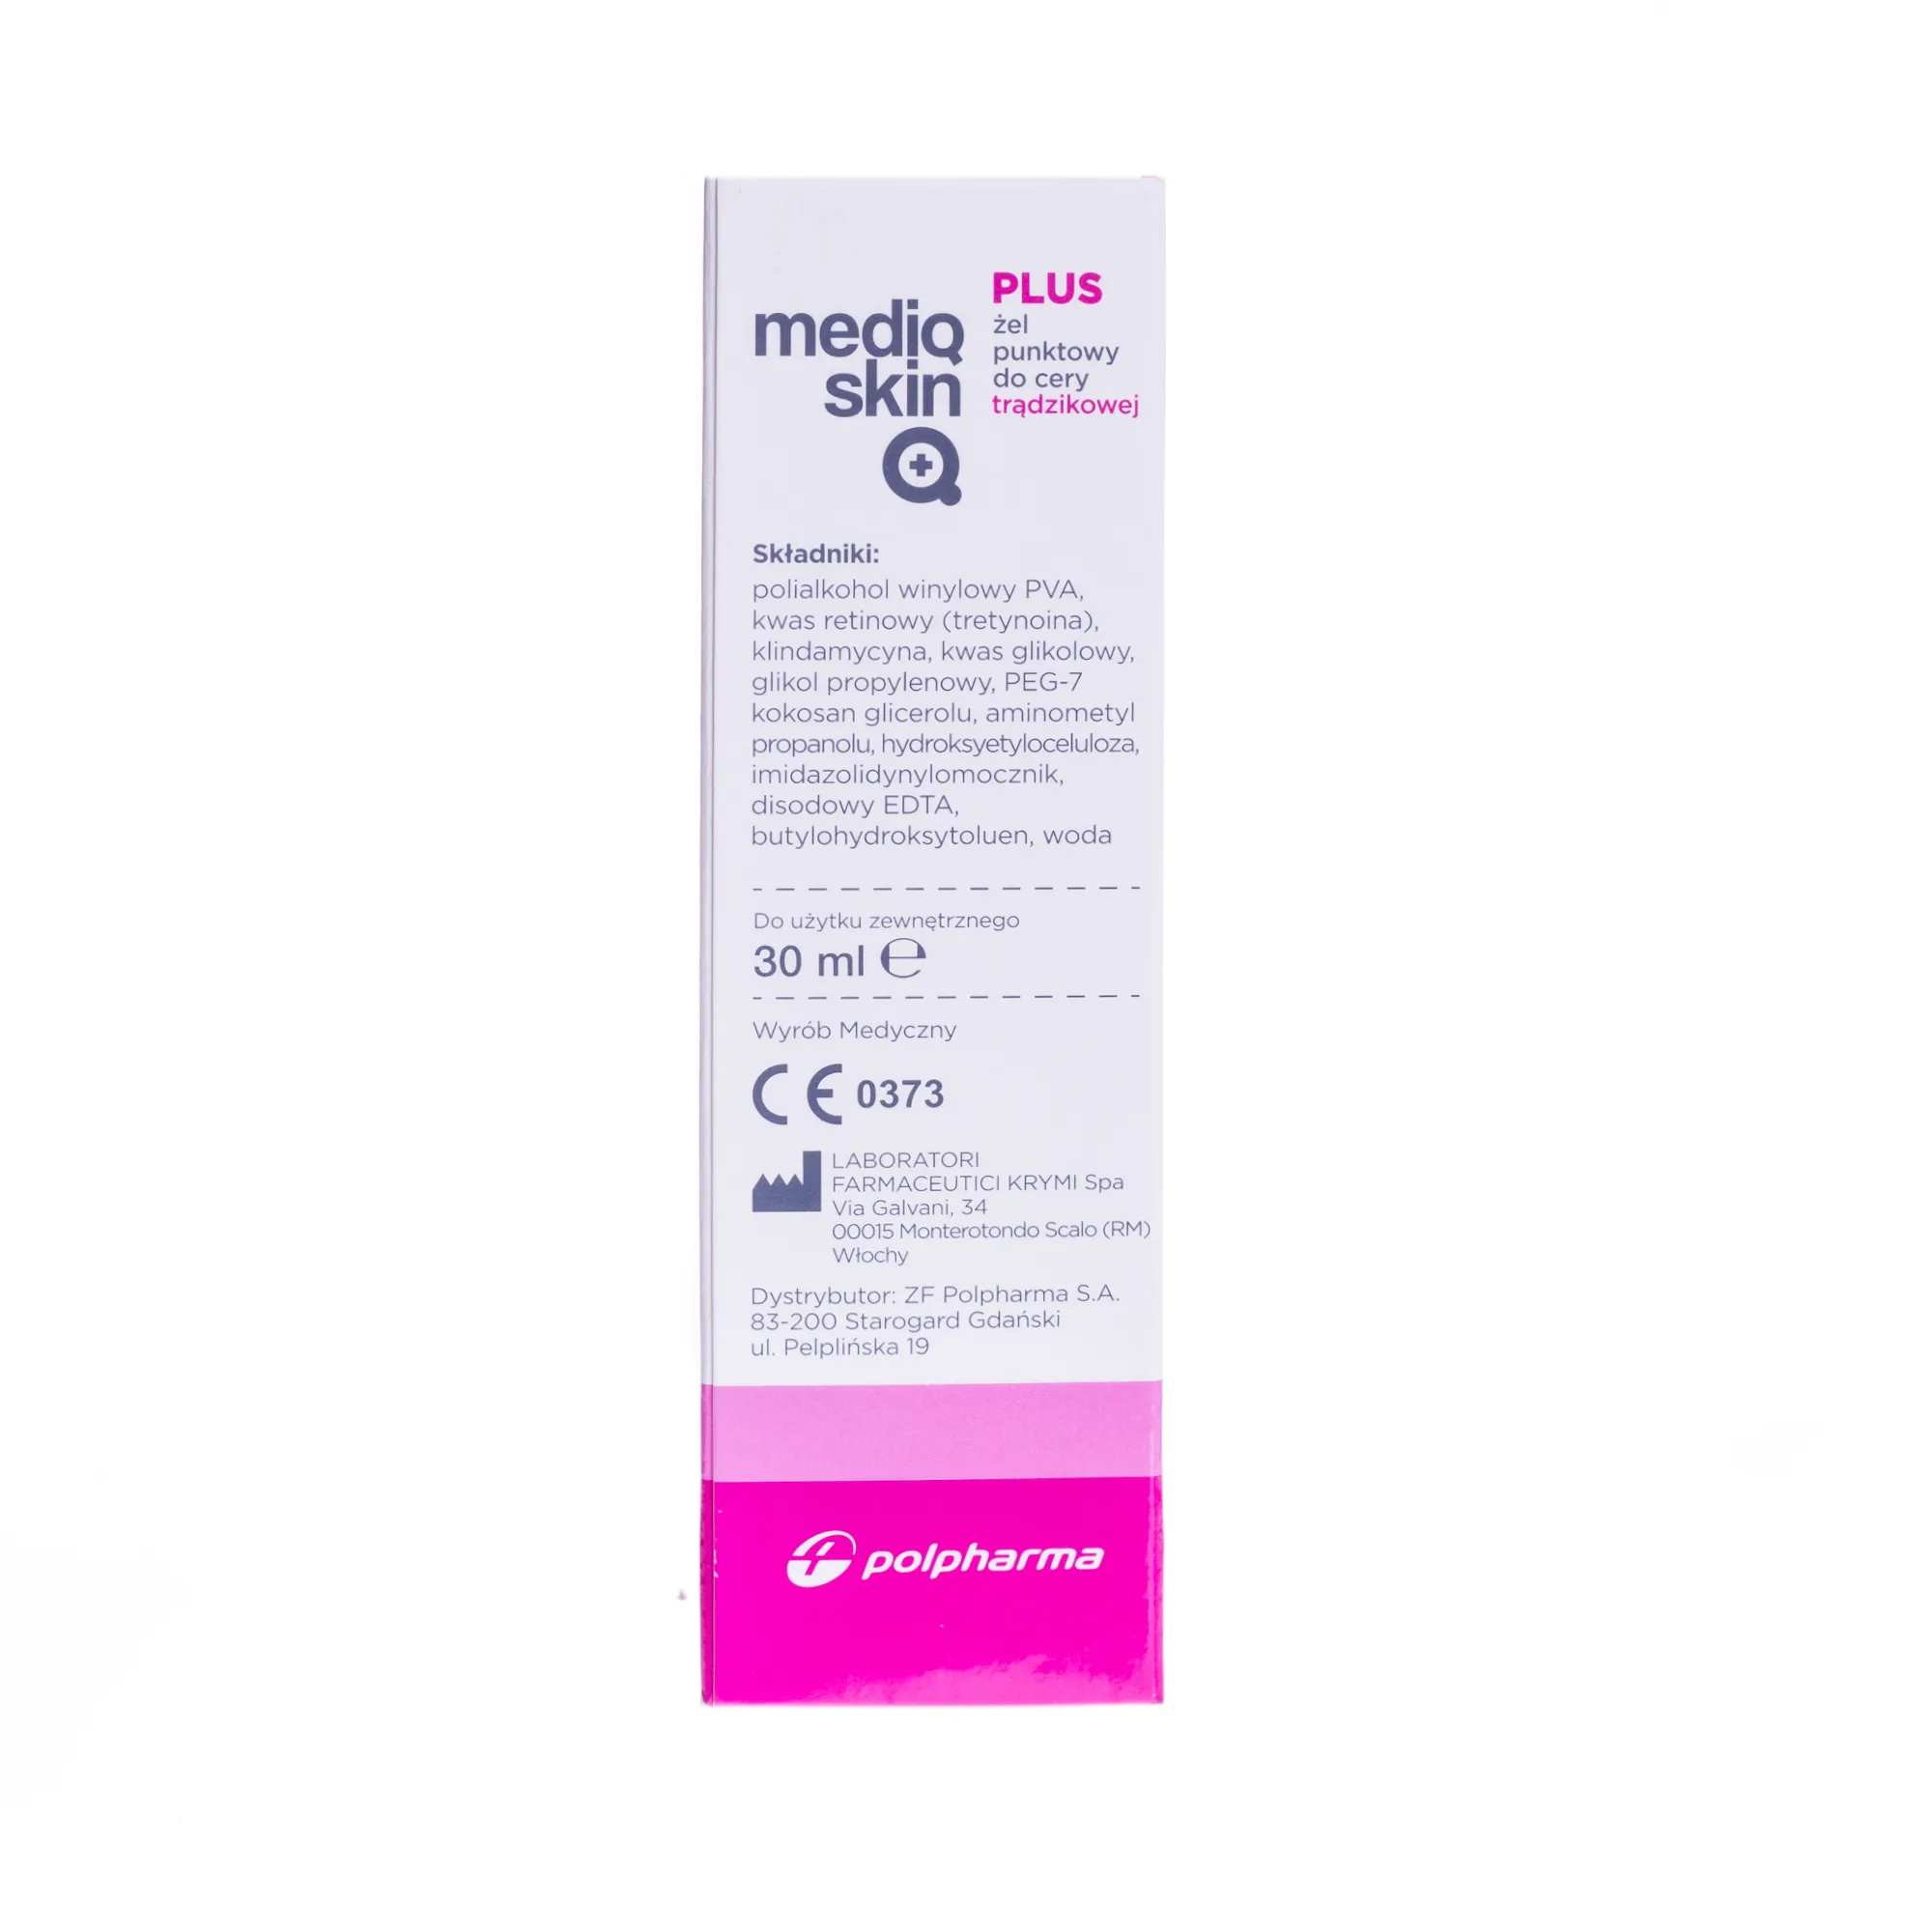 Mediqskin Plus, żel punktowy do cery trądzikowej, 30 ml 